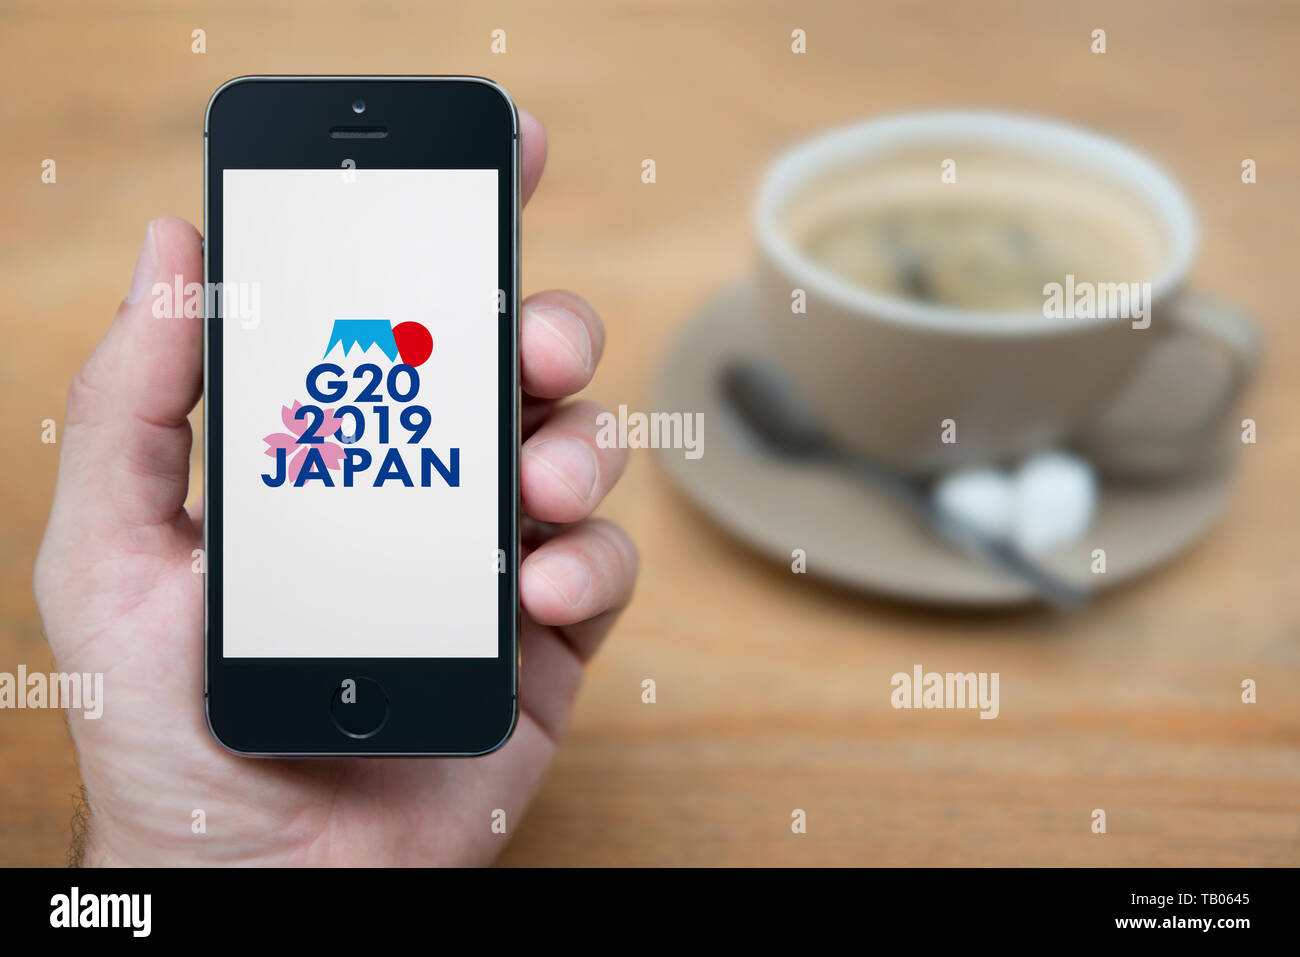 Un homme se penche sur son iPhone qui affiche le G20 2019 Osaka Japon logo du Sommet (usage éditorial uniquement). Banque D'Images